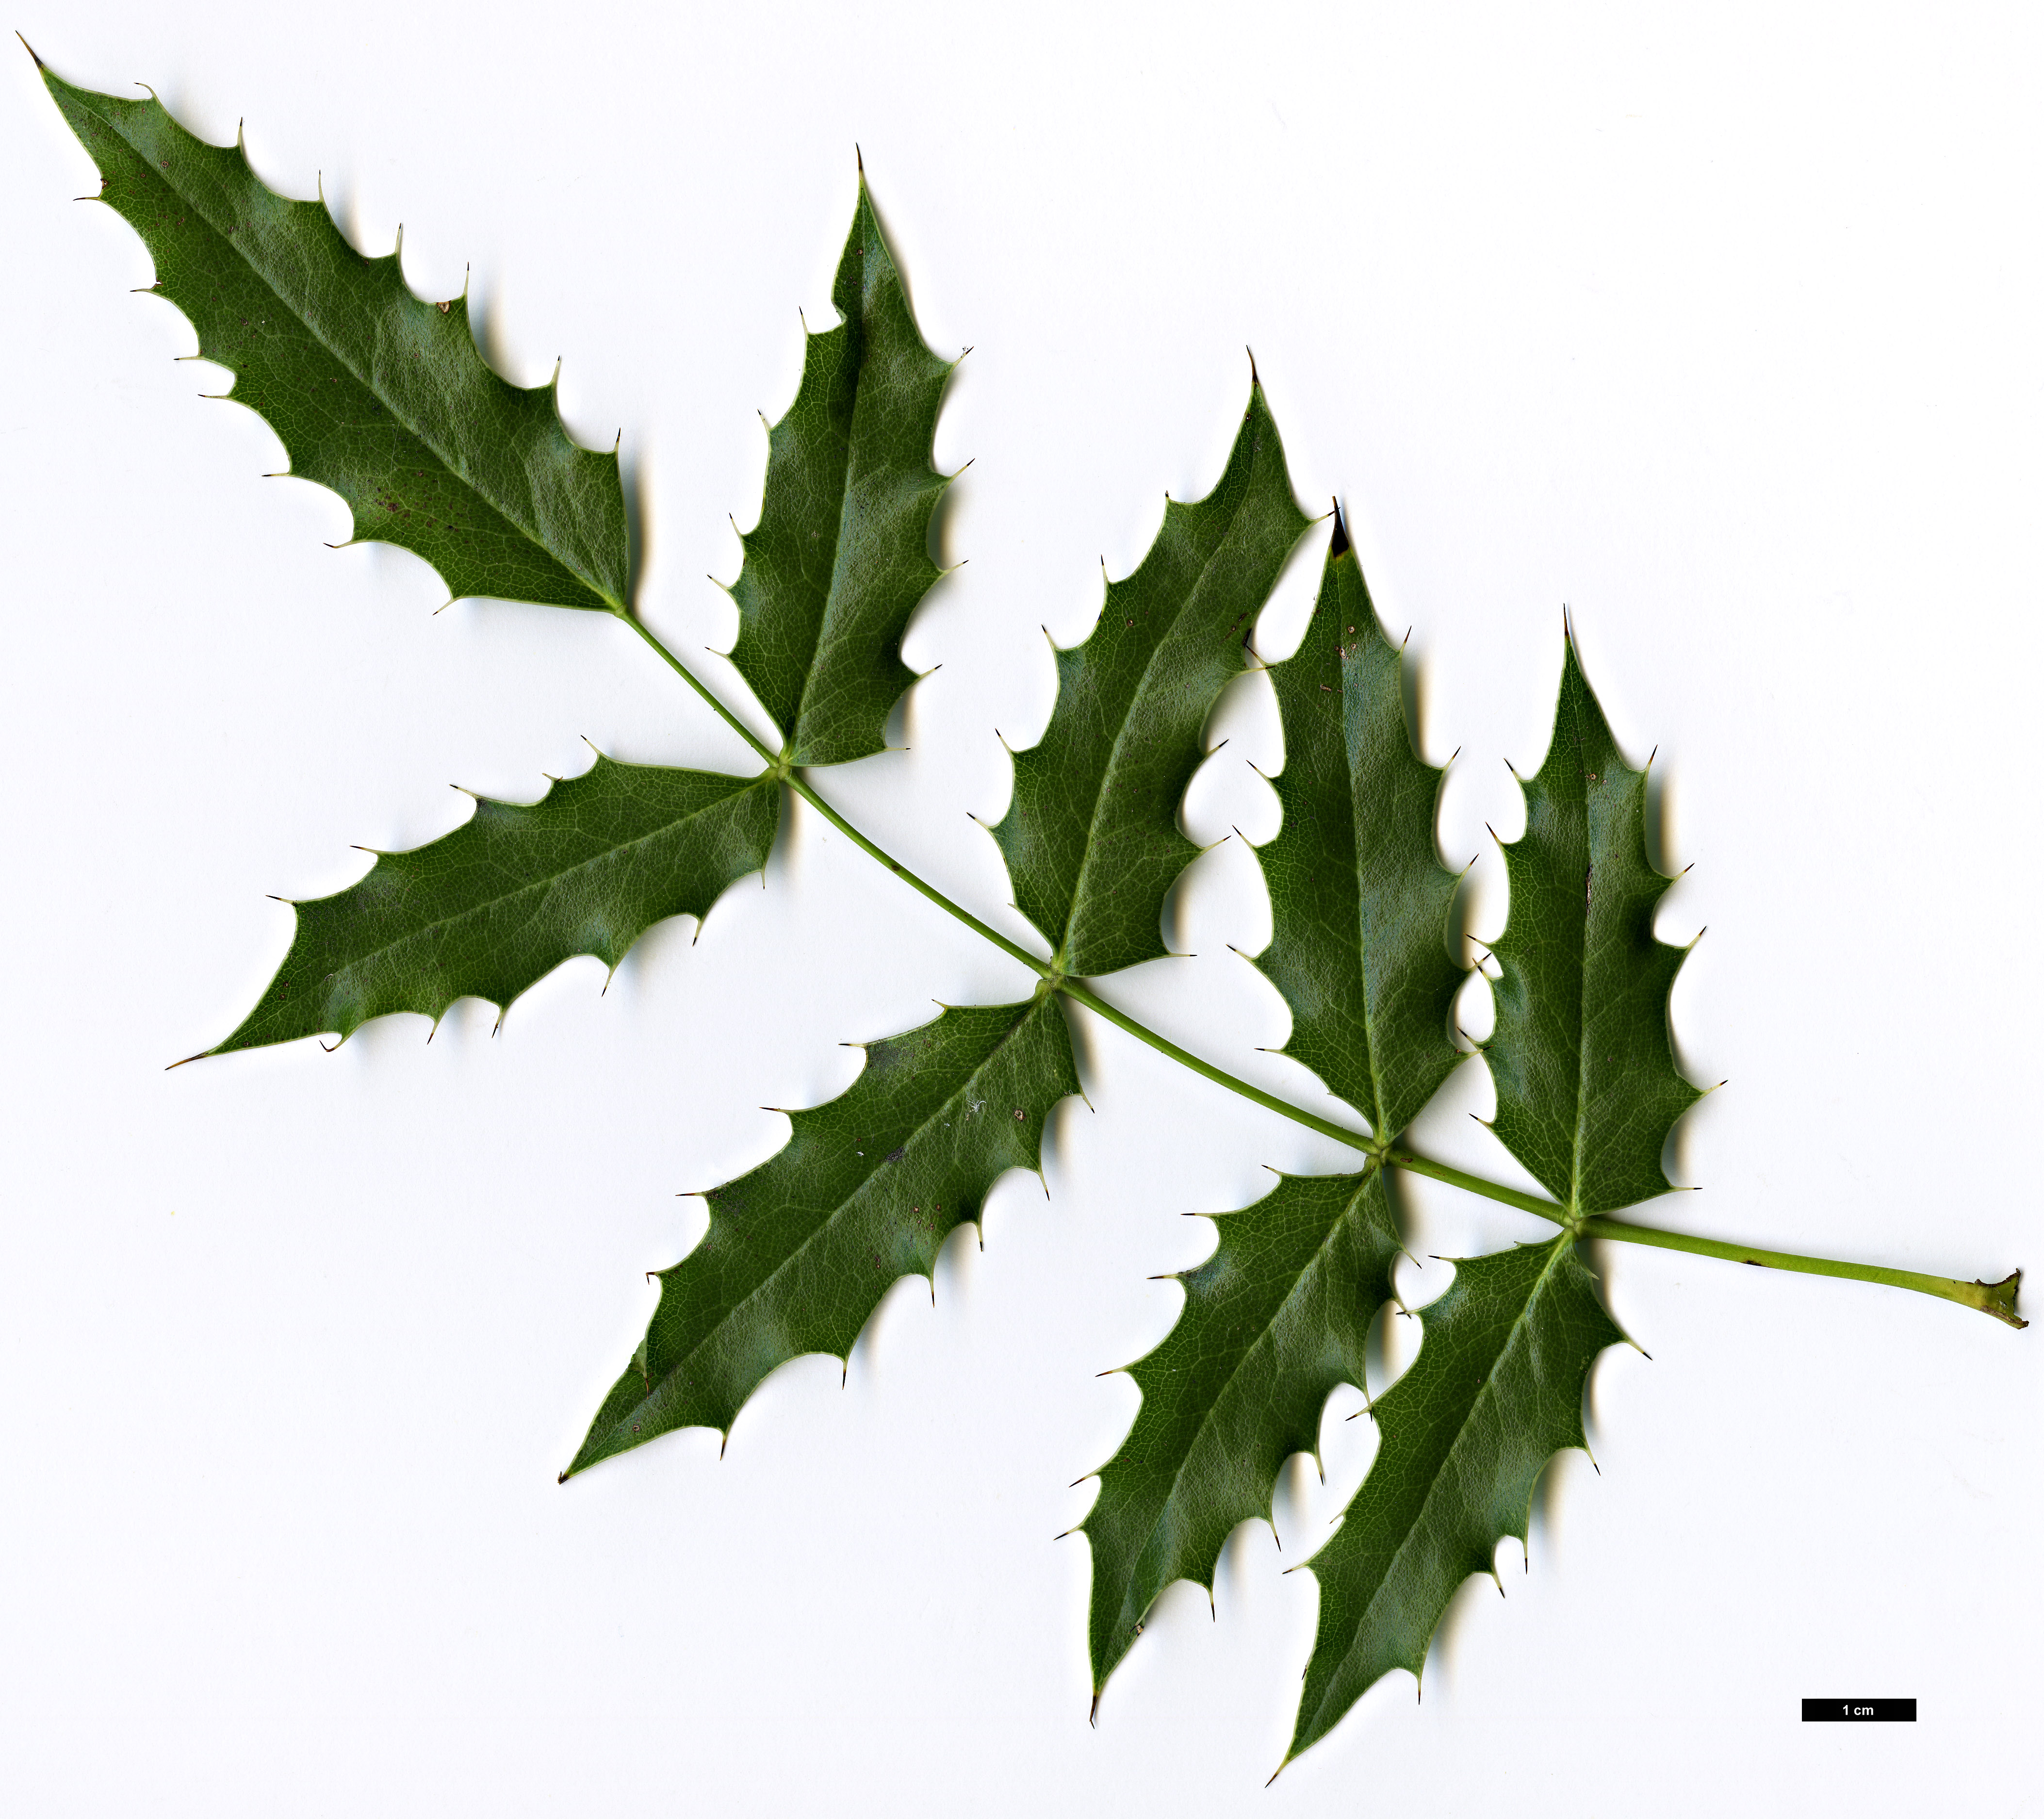 High resolution image: Family: Berberidaceae - Genus: Mahonia - Taxon: moranensis